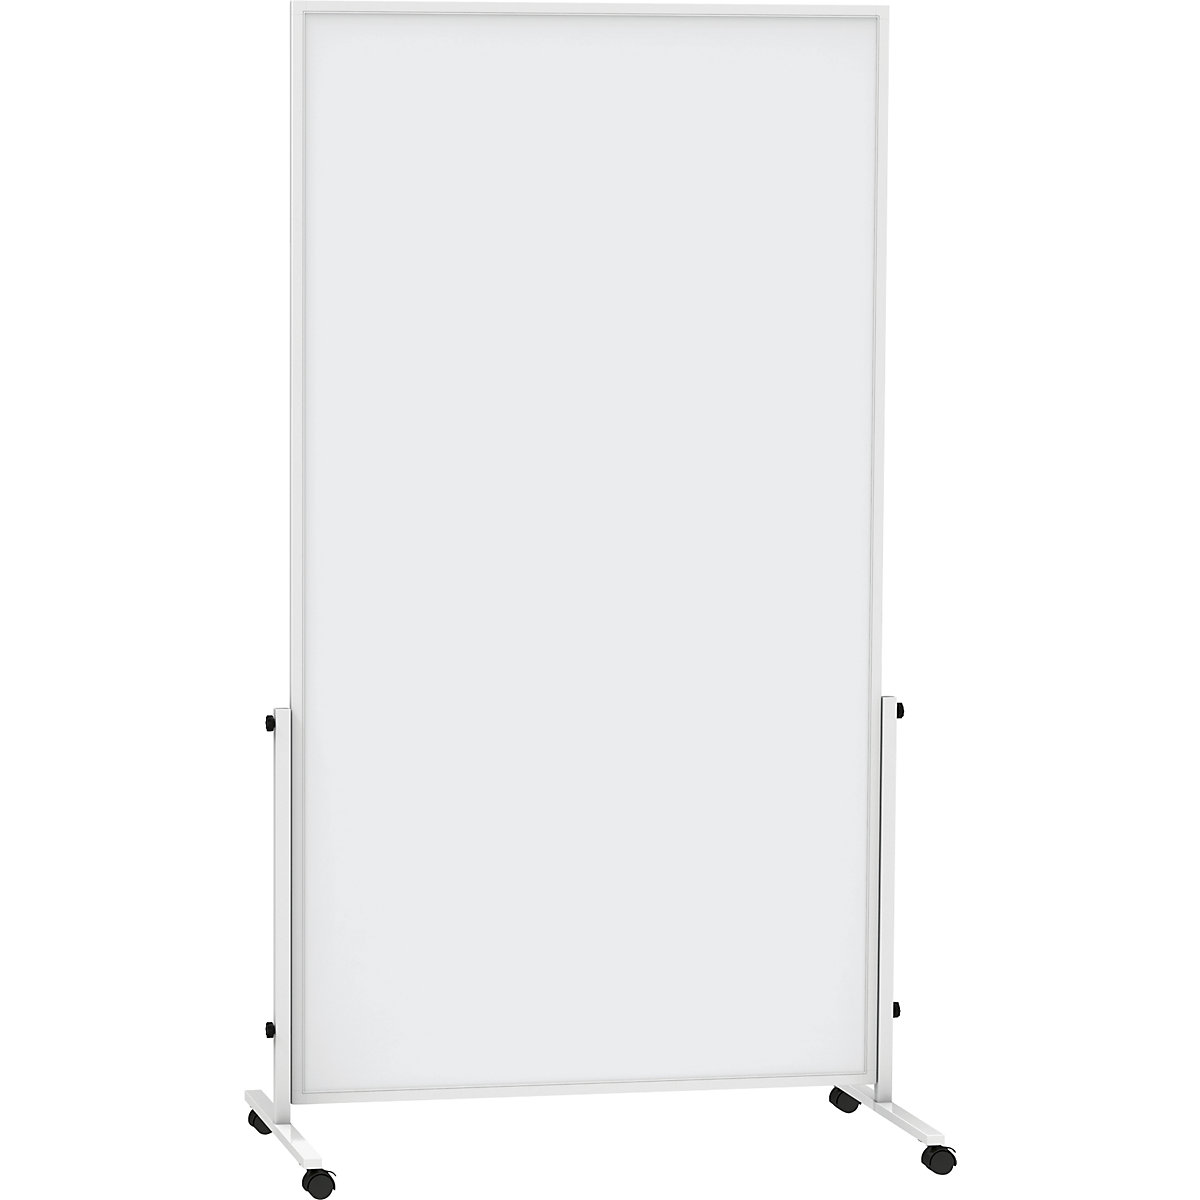 Panou whiteboard MAUL®solid easy2move, mobil – MAUL, î. x ad. 1965 x 640 mm, alb, î. x lăț. panou 1800 x 1000 mm-1